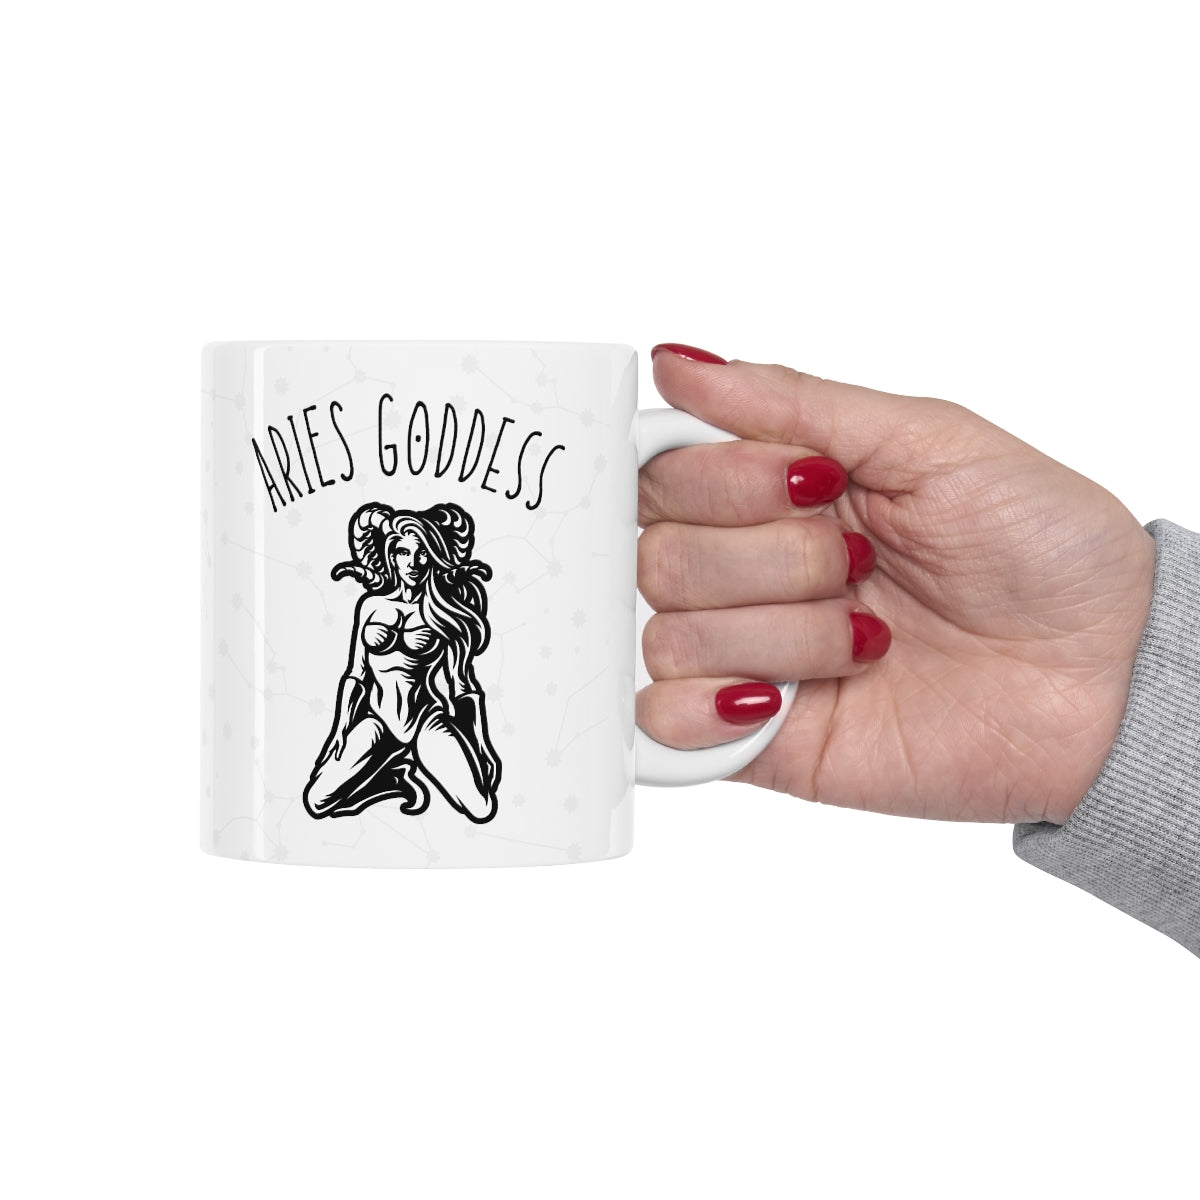 Aries Goddess Mug 12